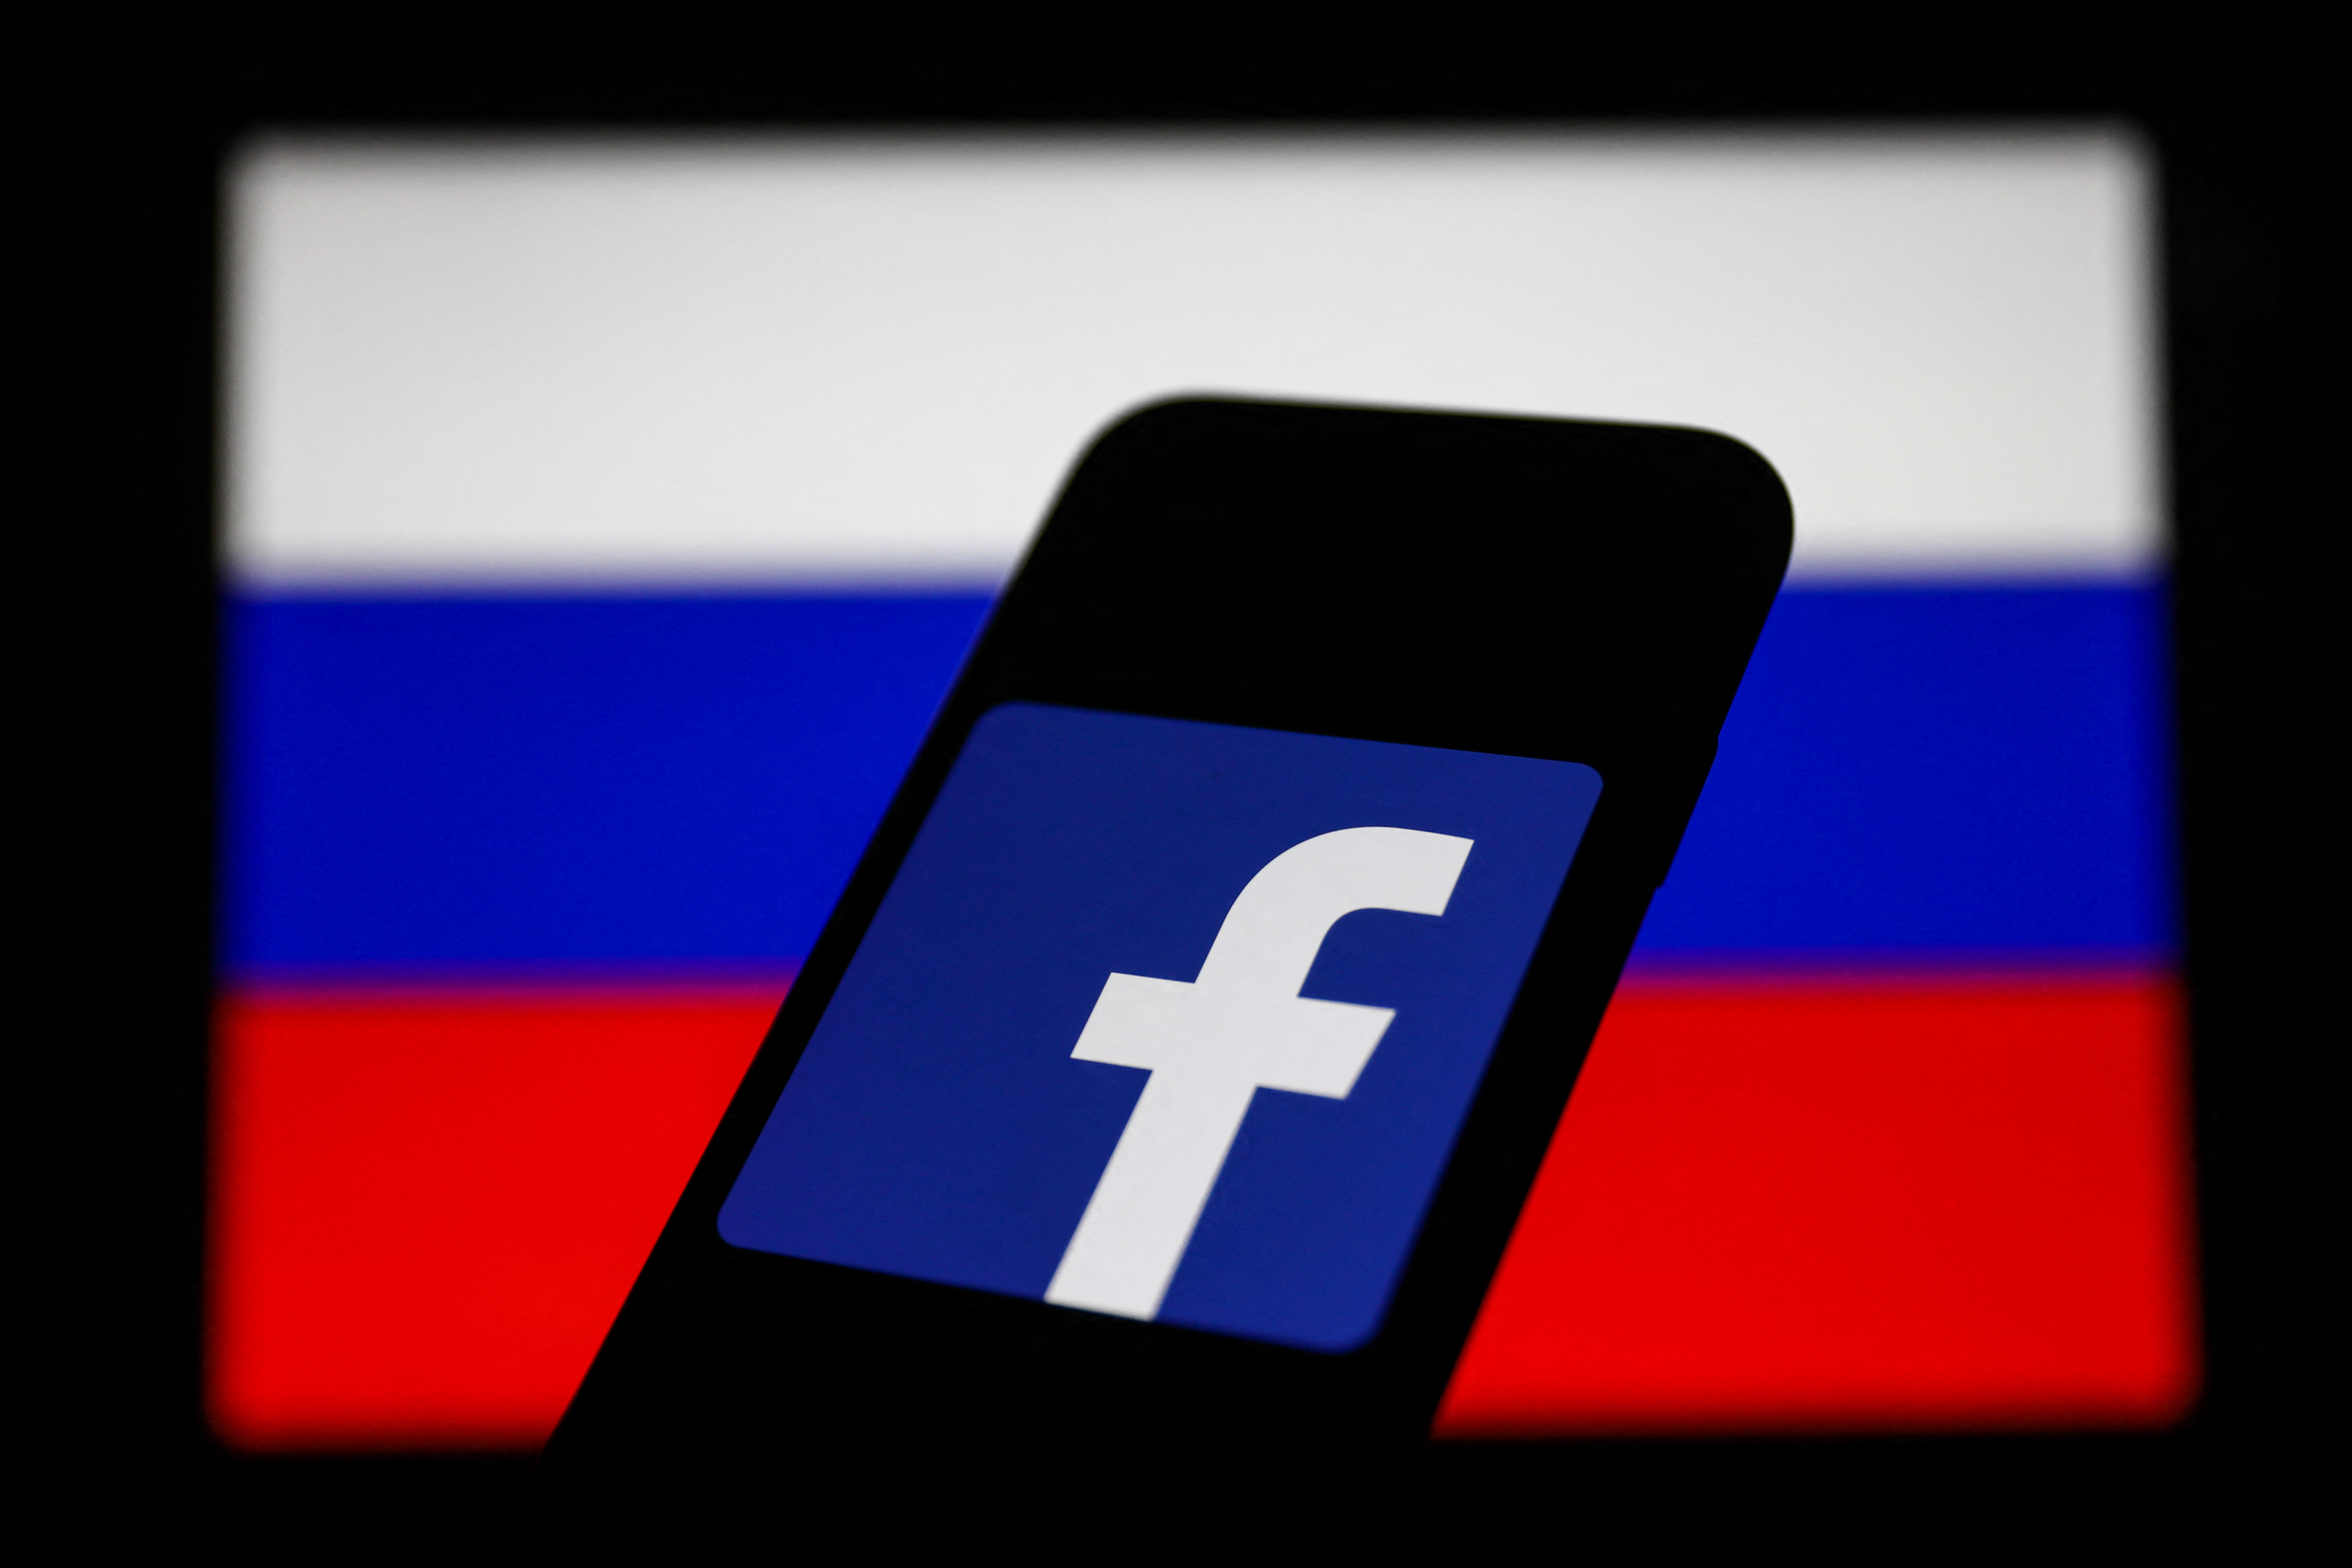 A Facebook egyes országokban átmenetileg lehetővé teszi, hogy az ukrajnai invázióval kapcsolatban oroszok elleni erőszakra szólítsanak fel